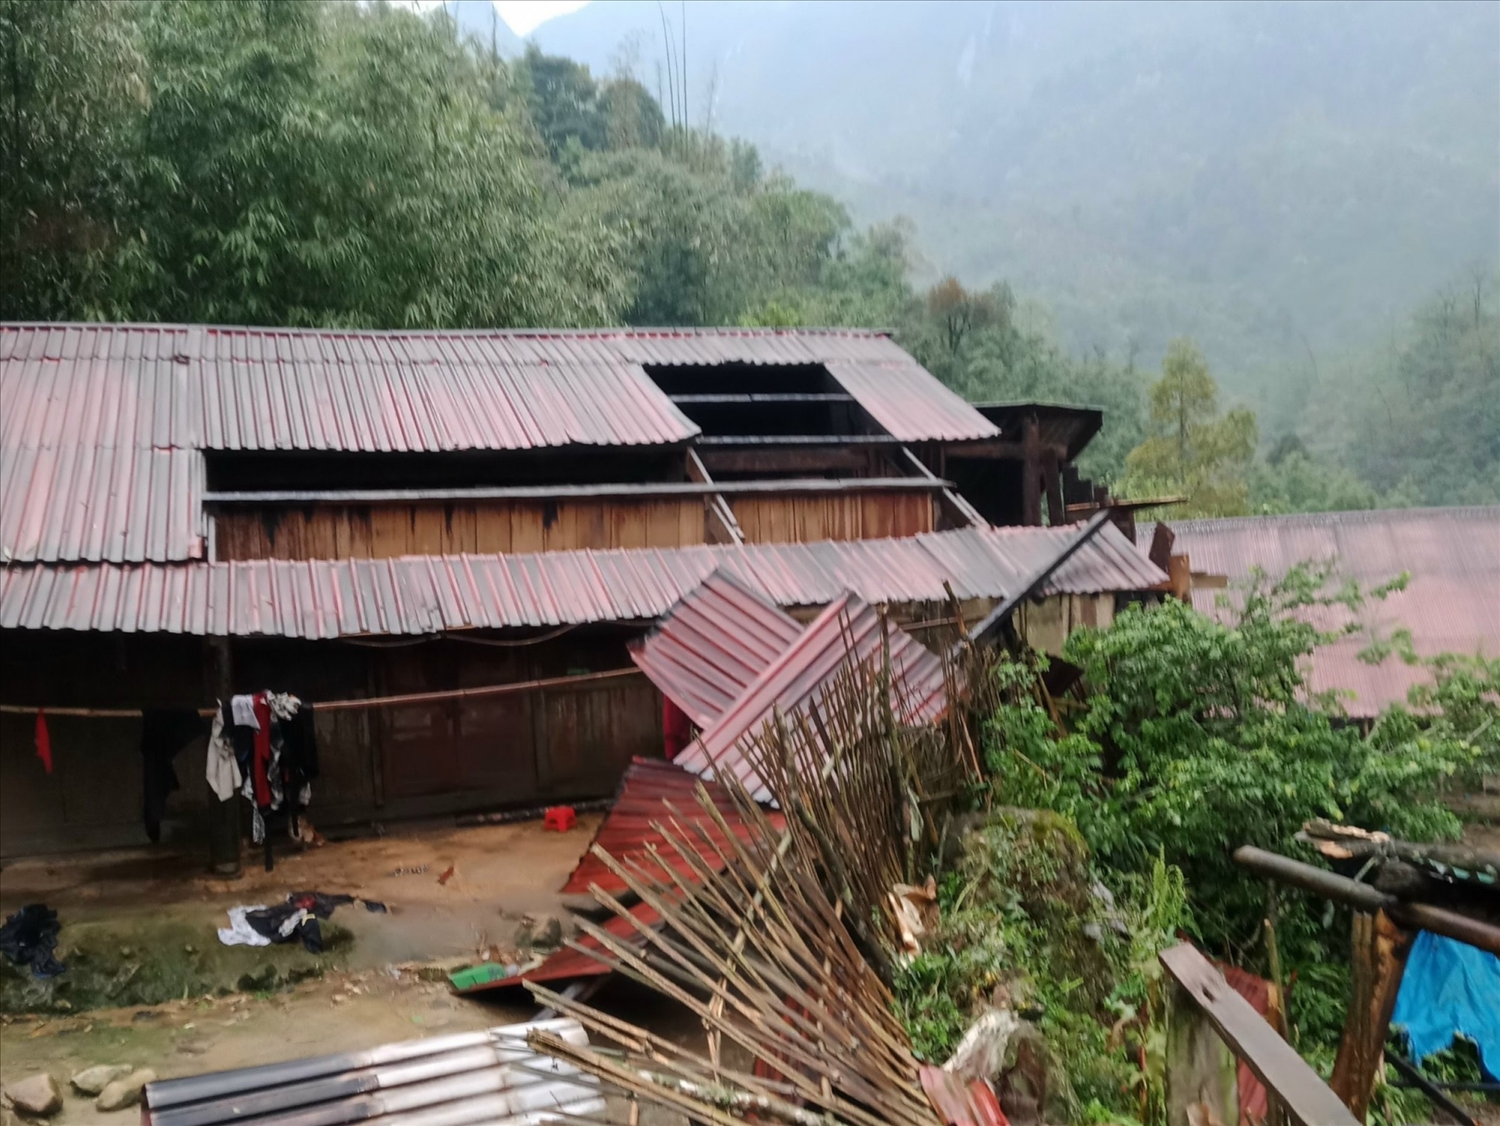 Huyện Bát Xát là địa phương chịu nhiều thiệt hại nhất, do mưa đá và gió lốc gây ra ngày 29/3